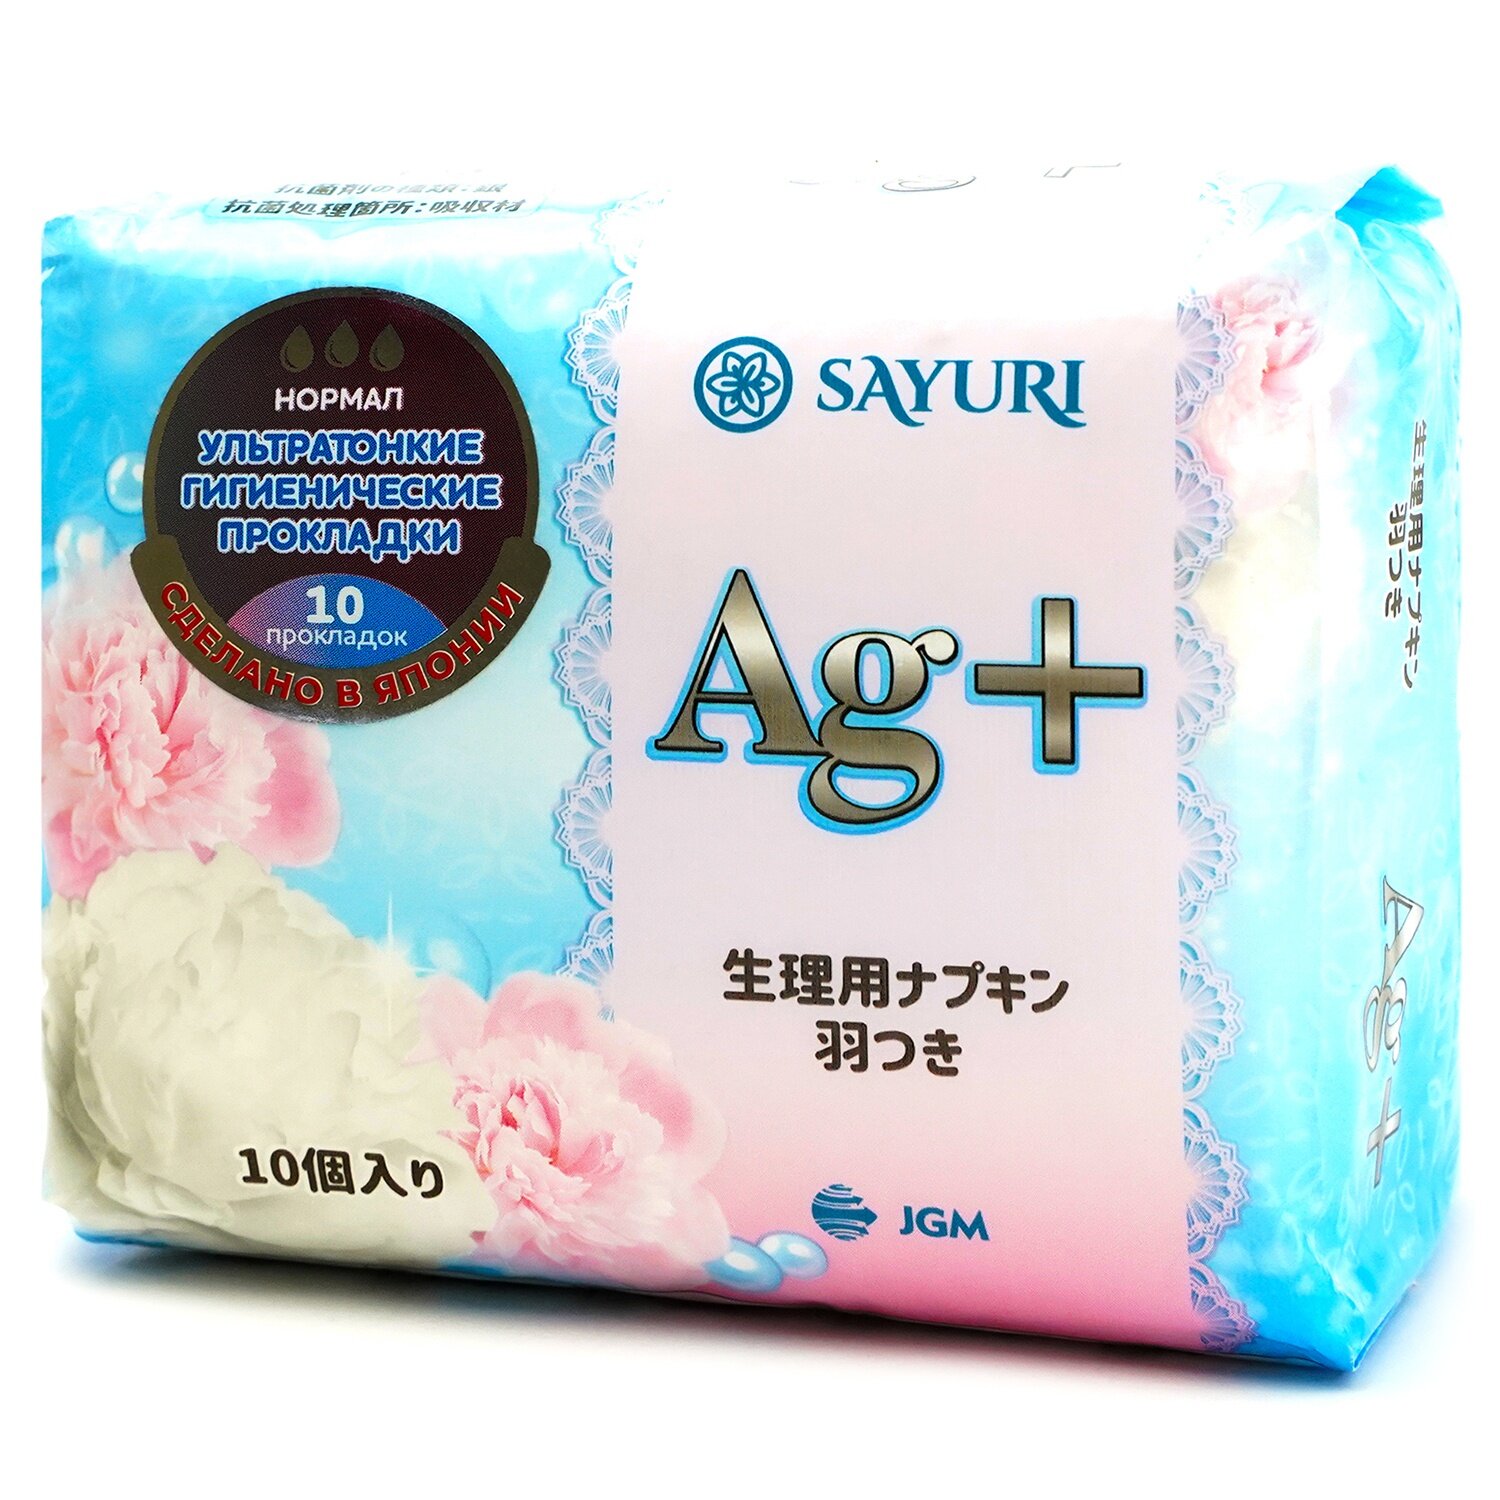 Прокладки гигиенические Sayuri Argentum+, нормал, 24 см, 10 шт